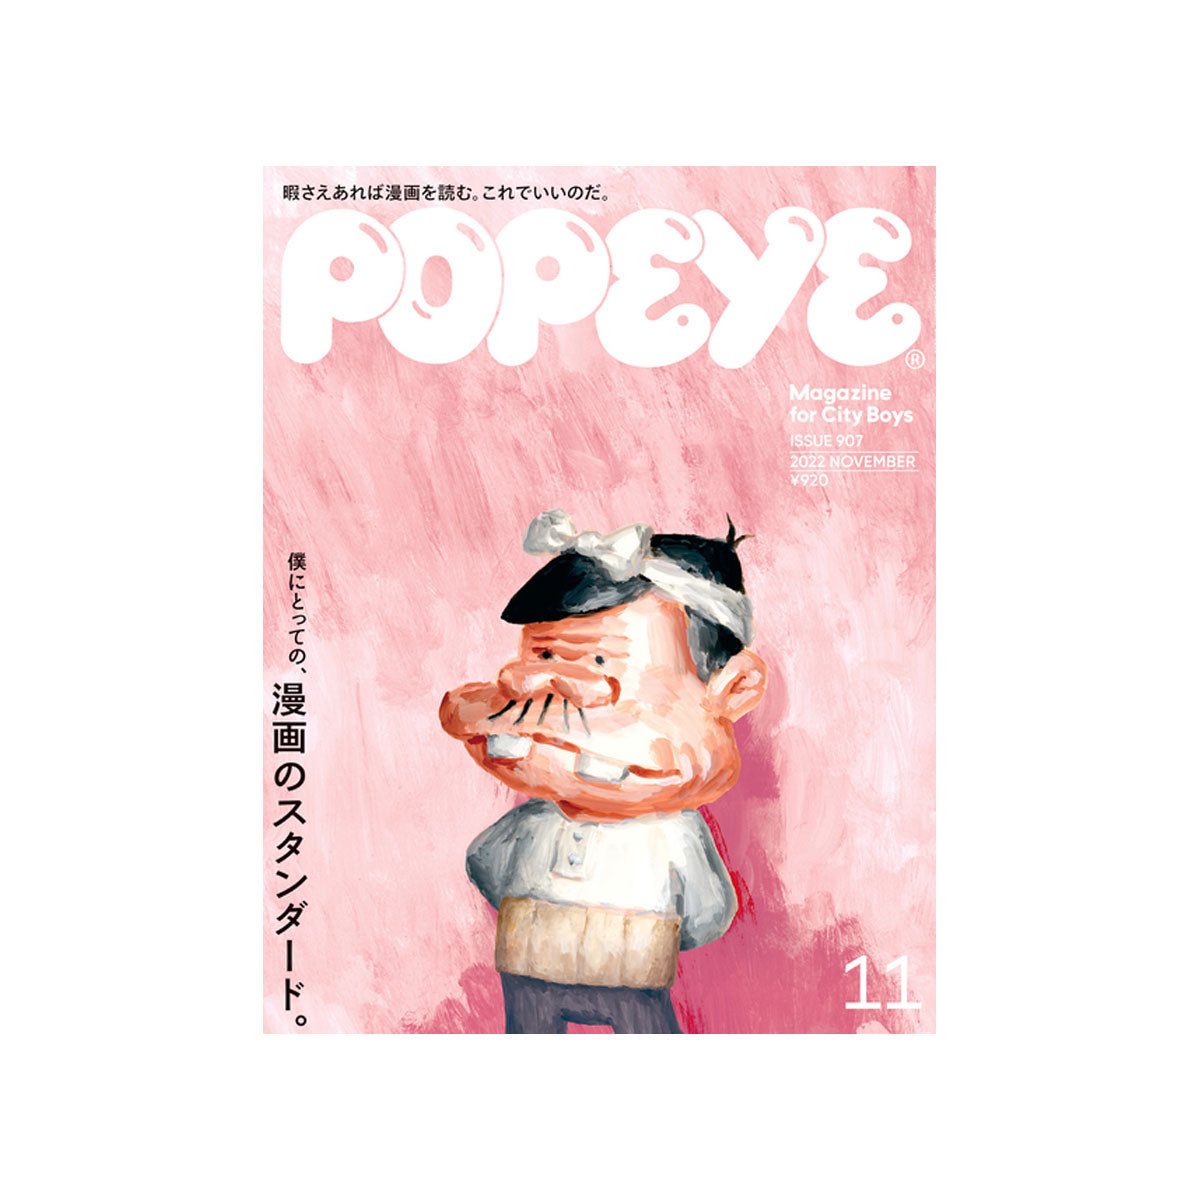 popeye – a.plus